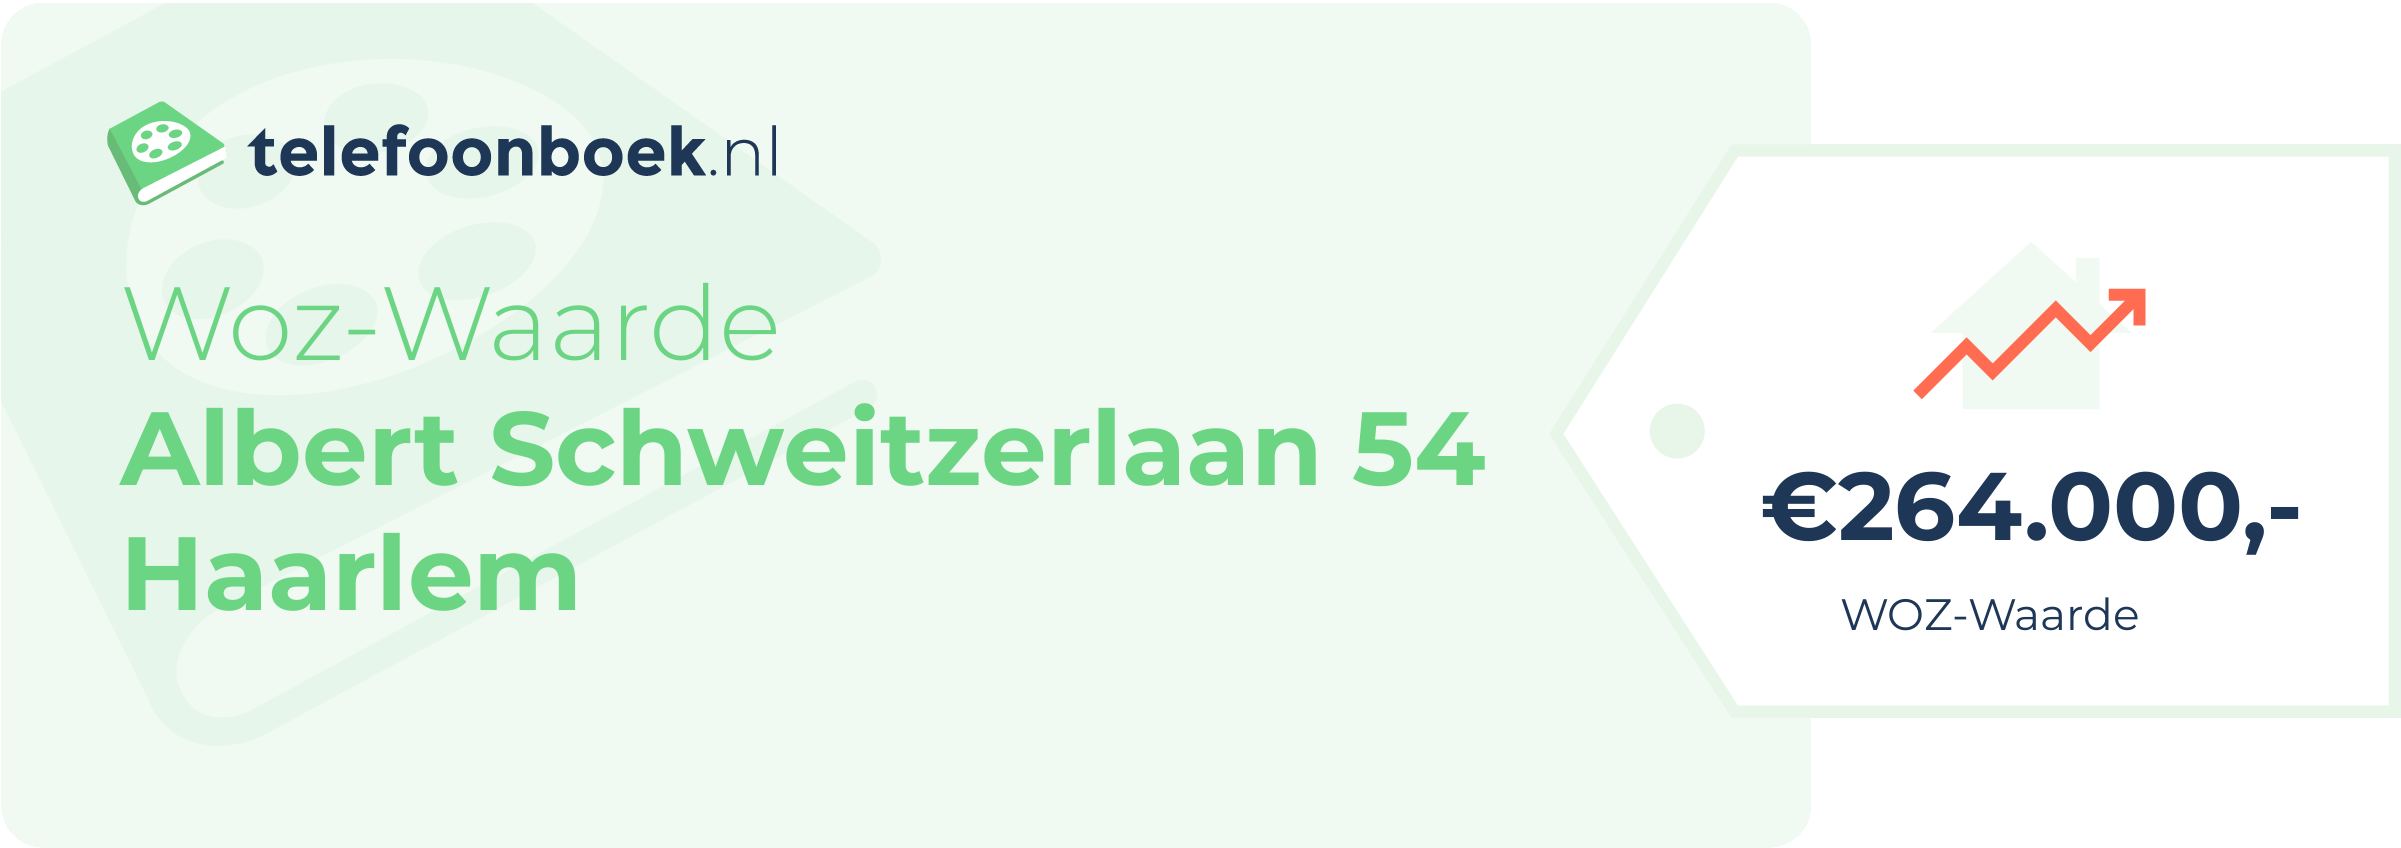 WOZ-waarde Albert Schweitzerlaan 54 Haarlem